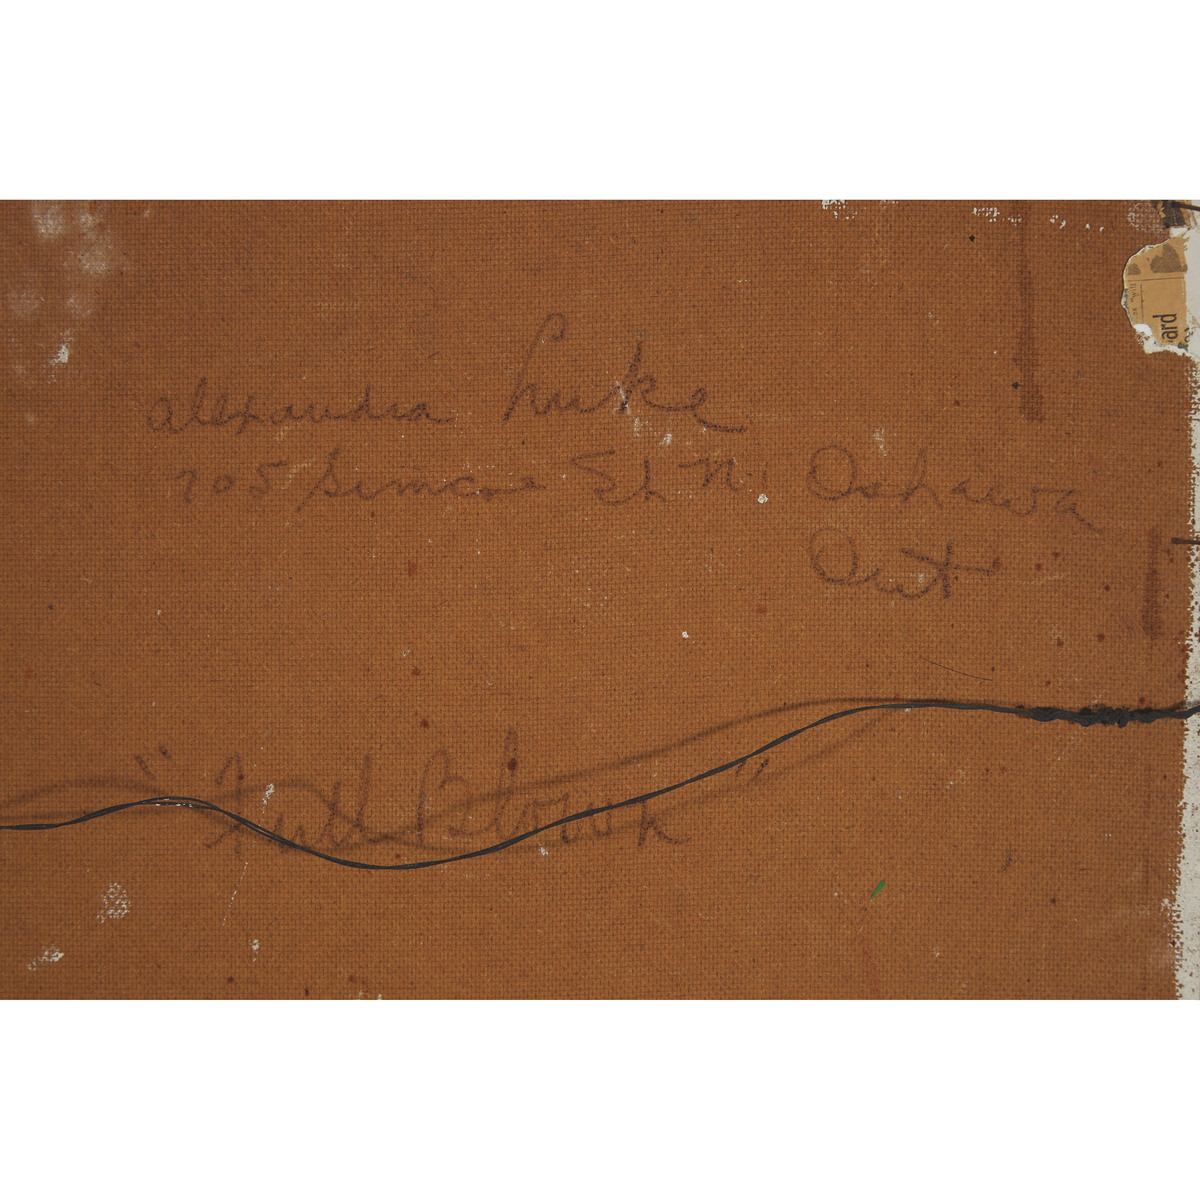 Alexandra Luke, OSA (1901-1967), FULL BLOWN, 1953, 32 x 28 in — 81.3 x 71.1 cm - Image 5 of 6